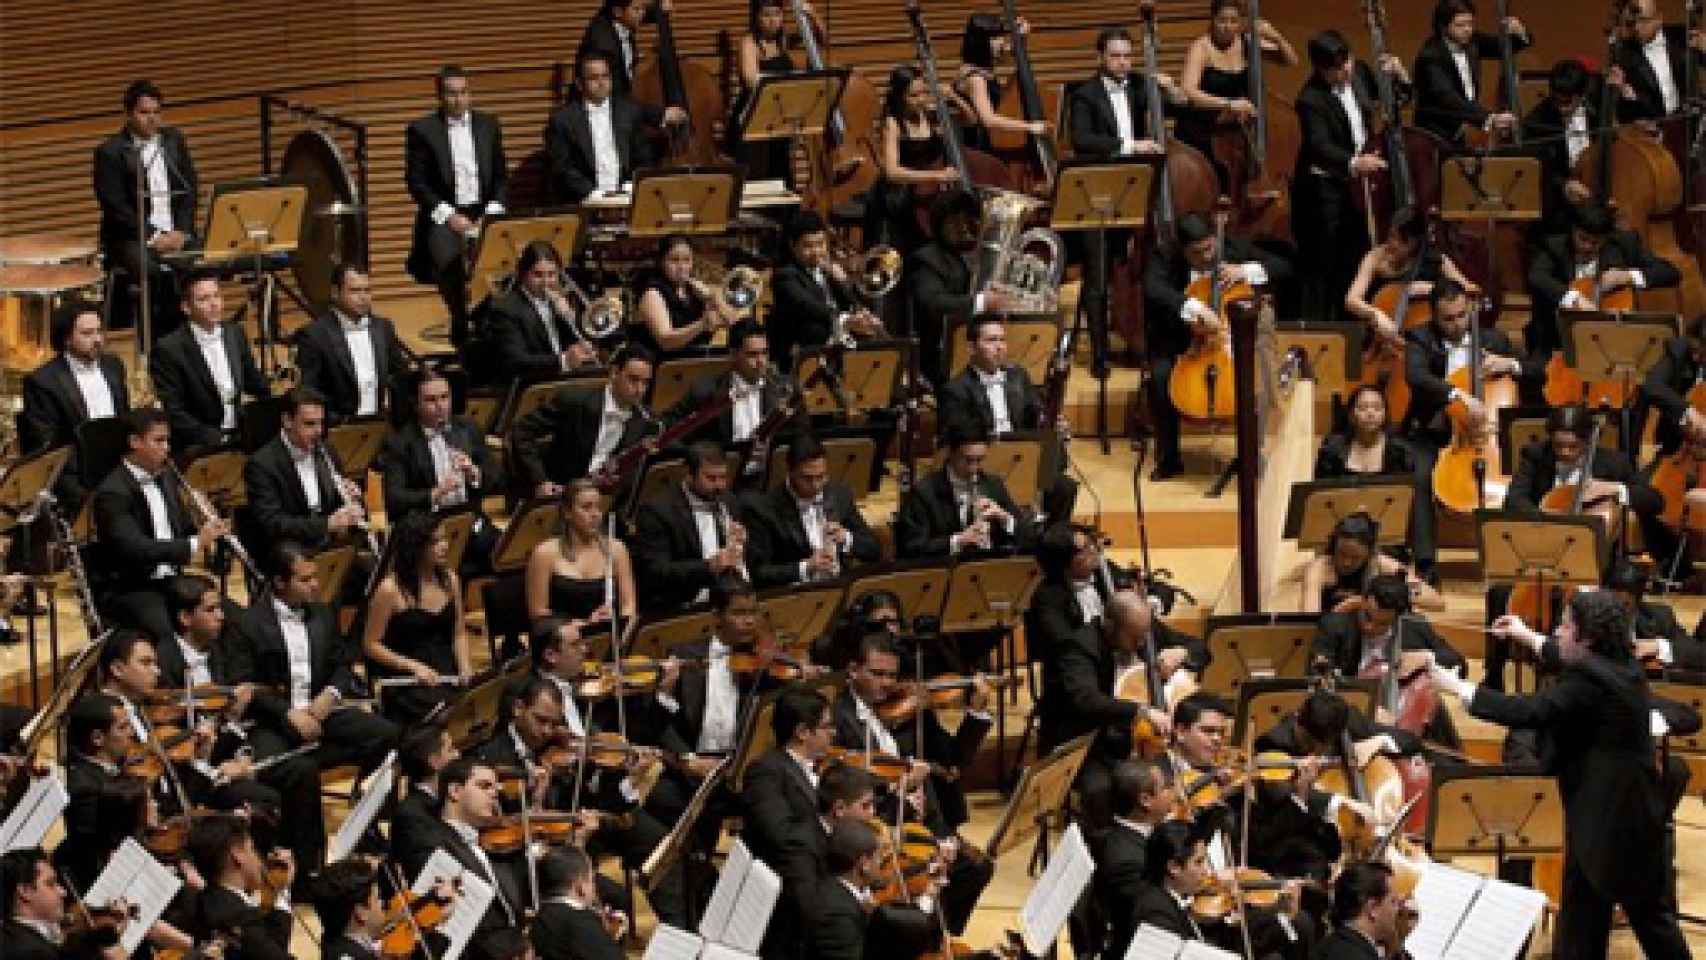 Image: Dudamel 'atacará' la integral de Beethoven en el Palau